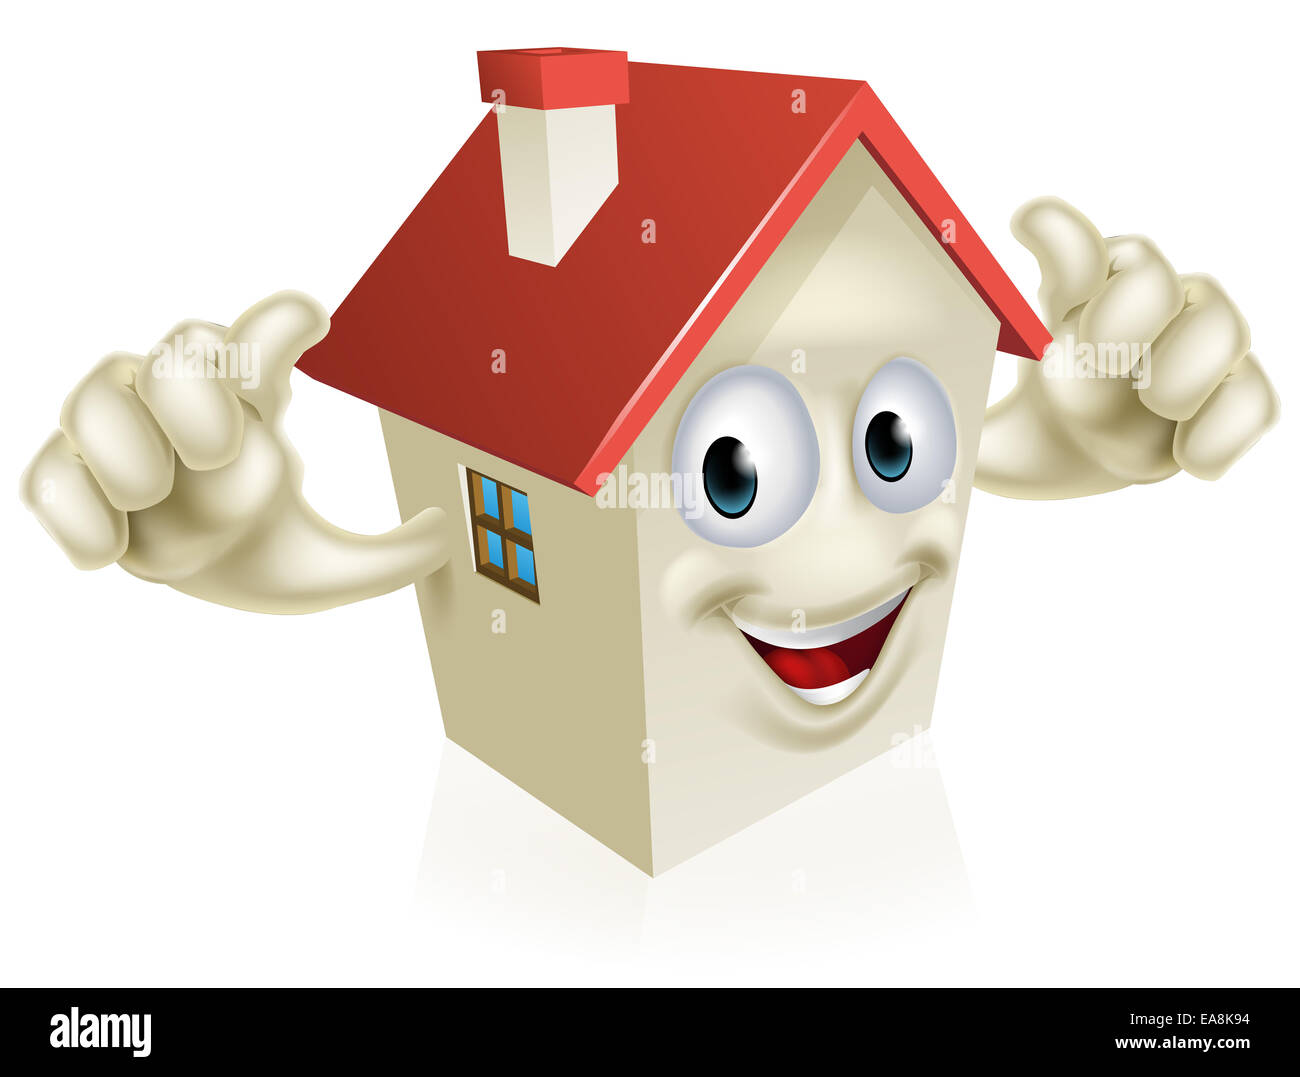 Une illustration d'une mascotte cartoon happy house en donnant un coup de pouce Banque D'Images